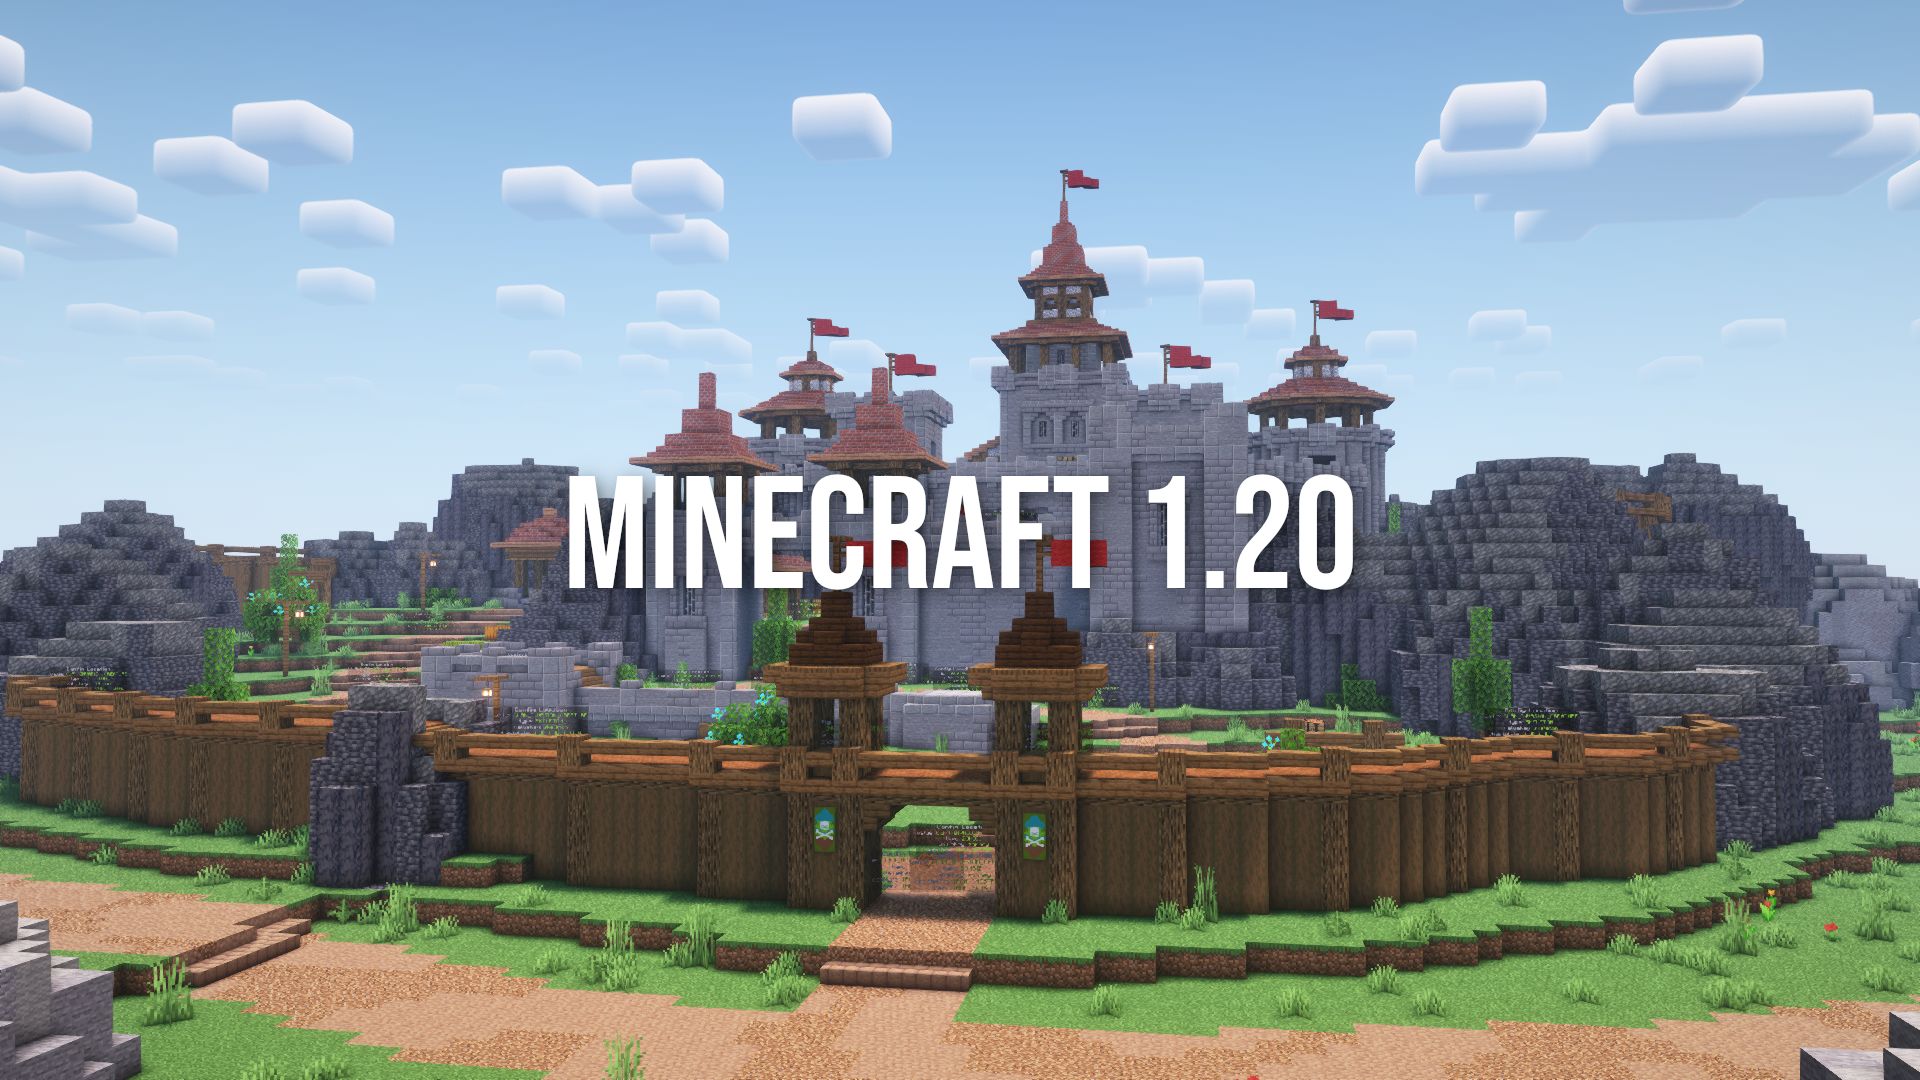 Eine Schloss mit hölzerner Burgmauer und dem Schriftzug "Minecraft 1.20"